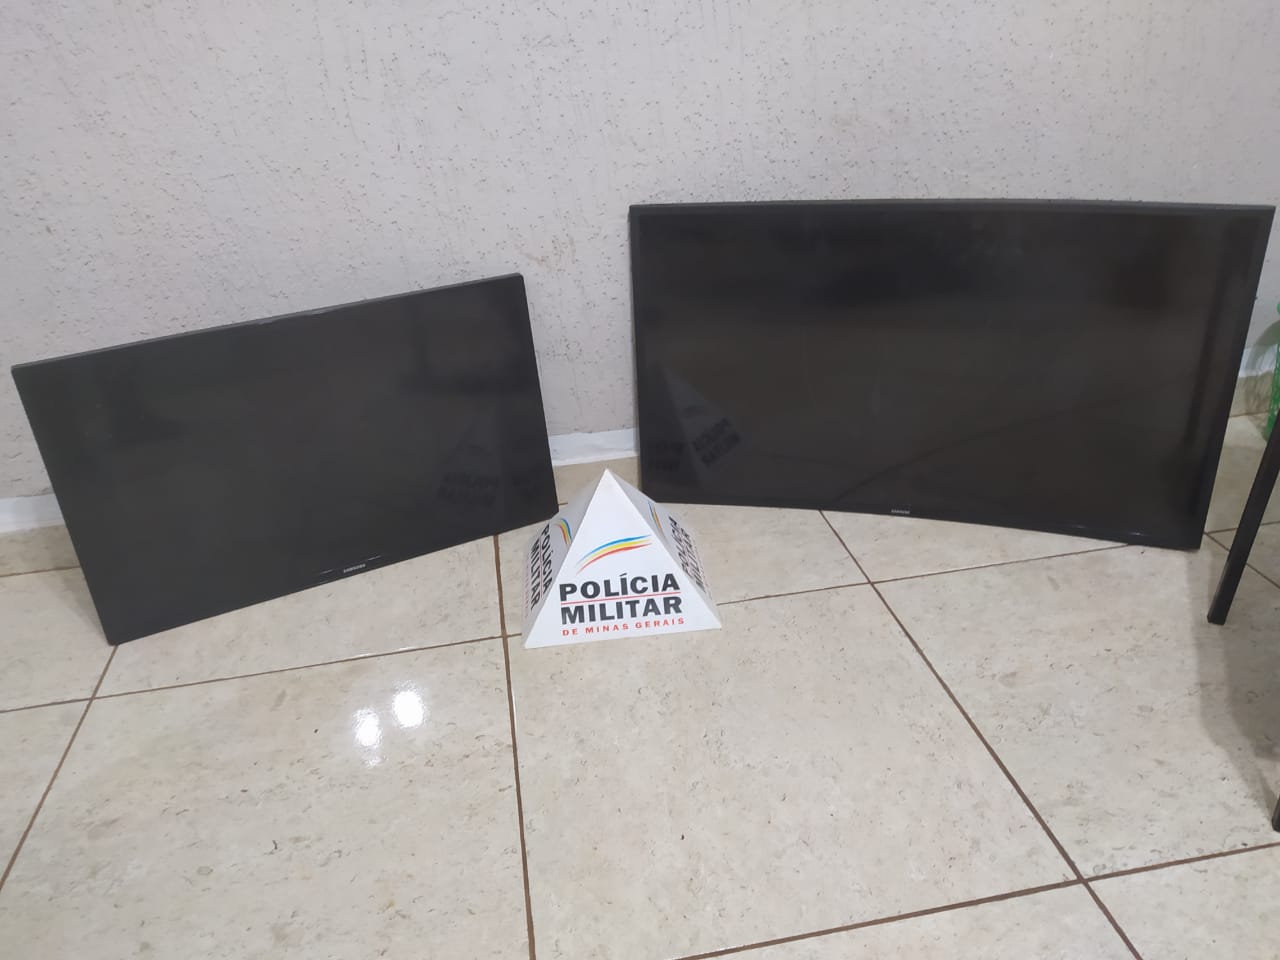  PM de Capinópolis recupera televisores furtados em fazenda e prende suspeito de furto